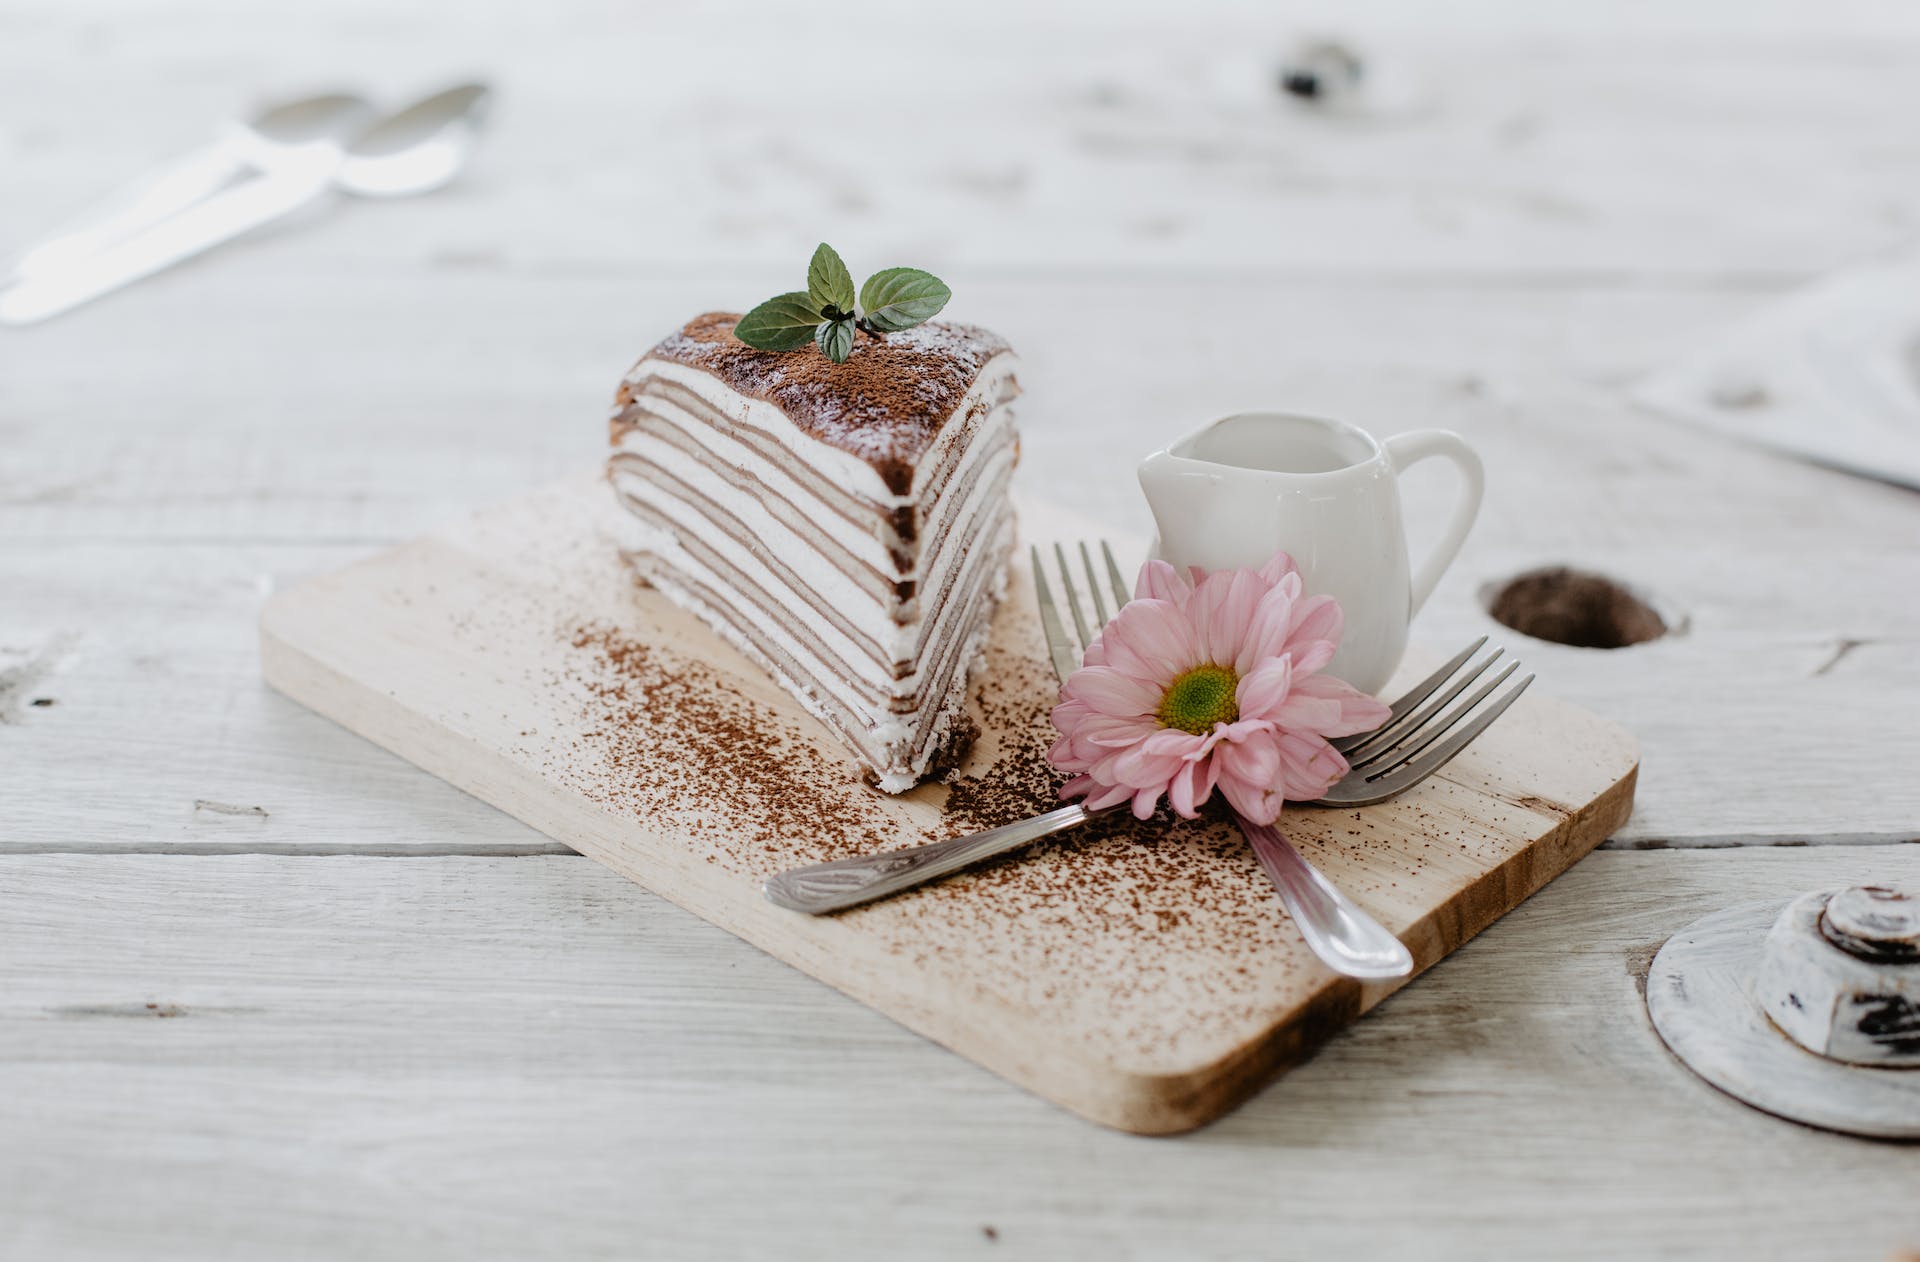 Kuchenstück auf dem Tisch | Quelle: Pexels